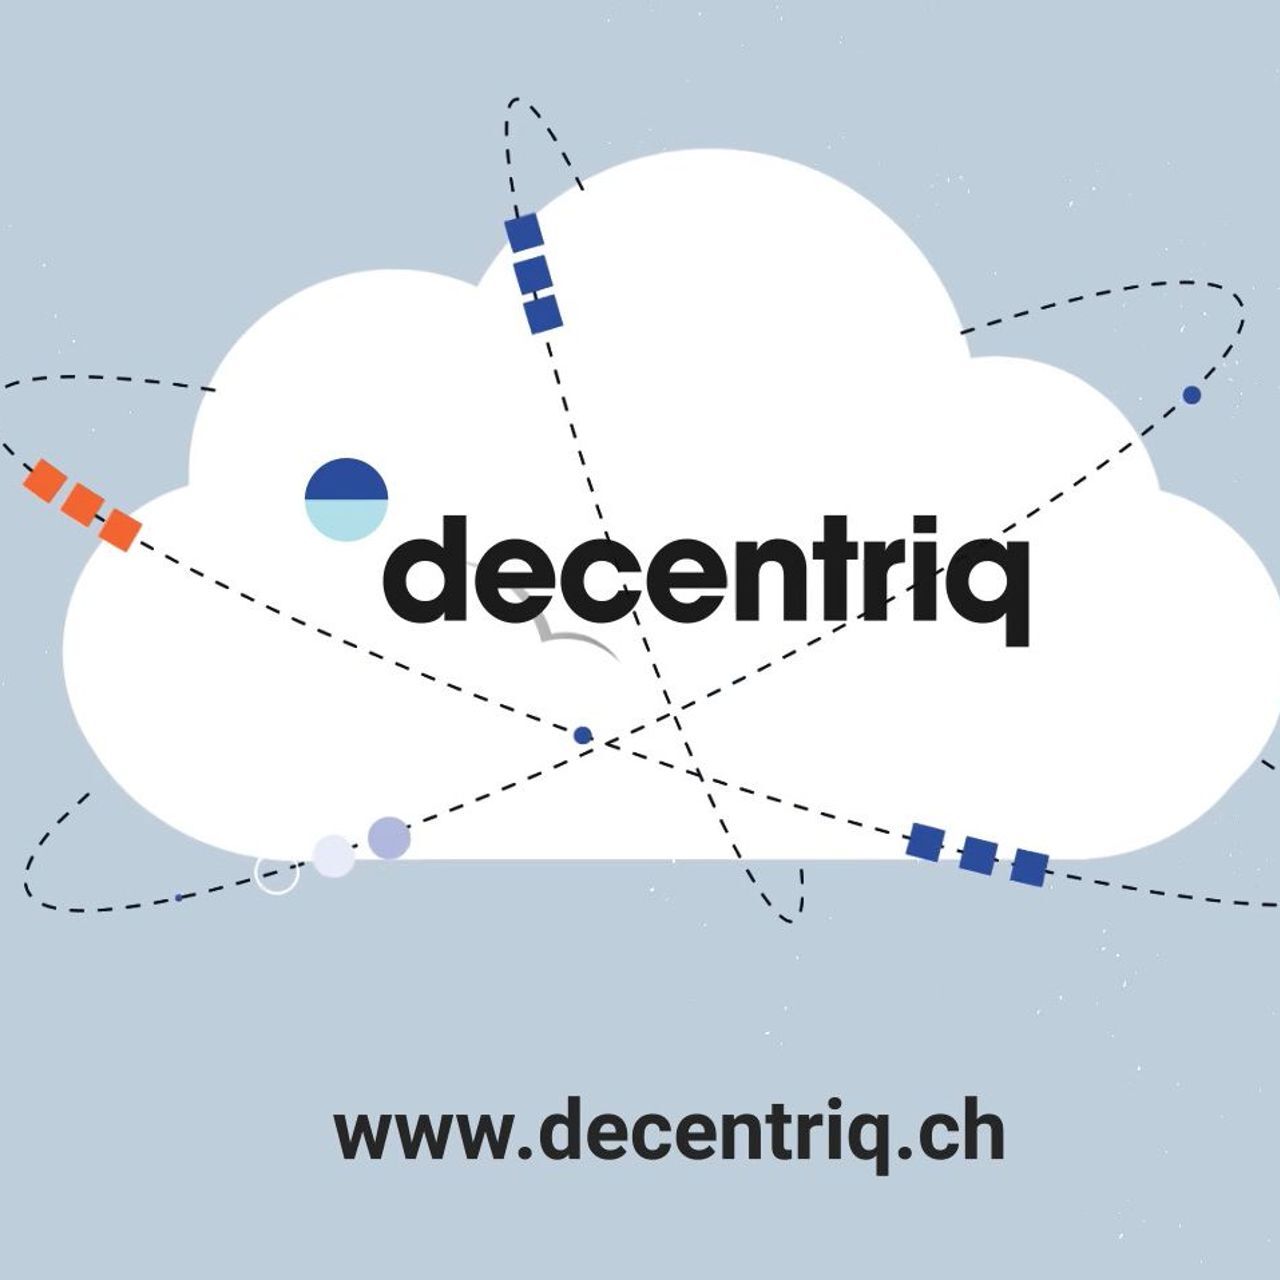 Απεικόνιση του ασφαλούς νέφους κοινής χρήσης δεδομένων της Decentriq, νικητής του